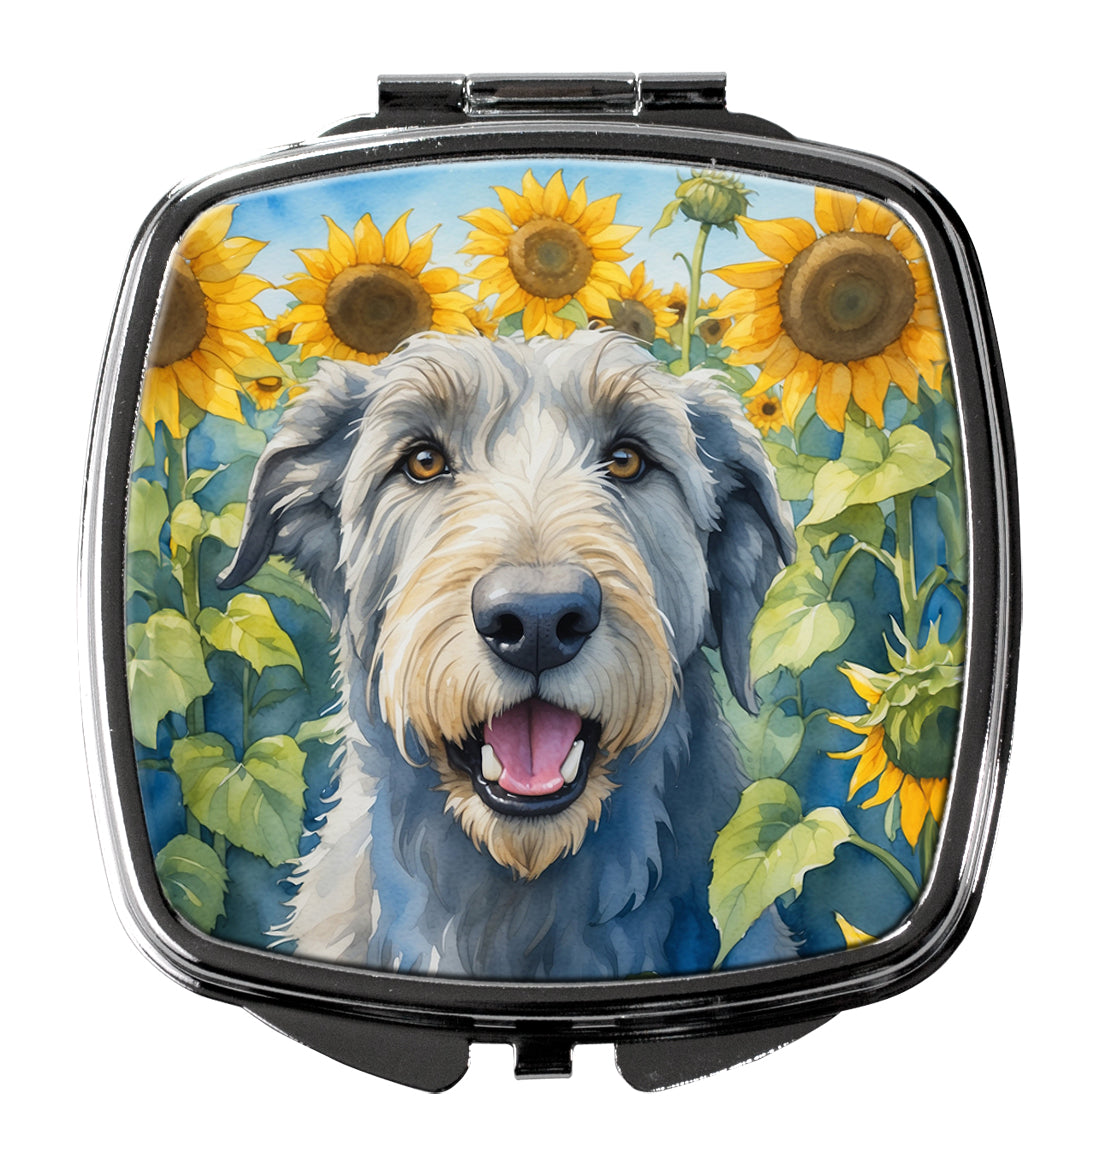 Buy this Irish Wolfhound in Sunflowers Compact Mirror